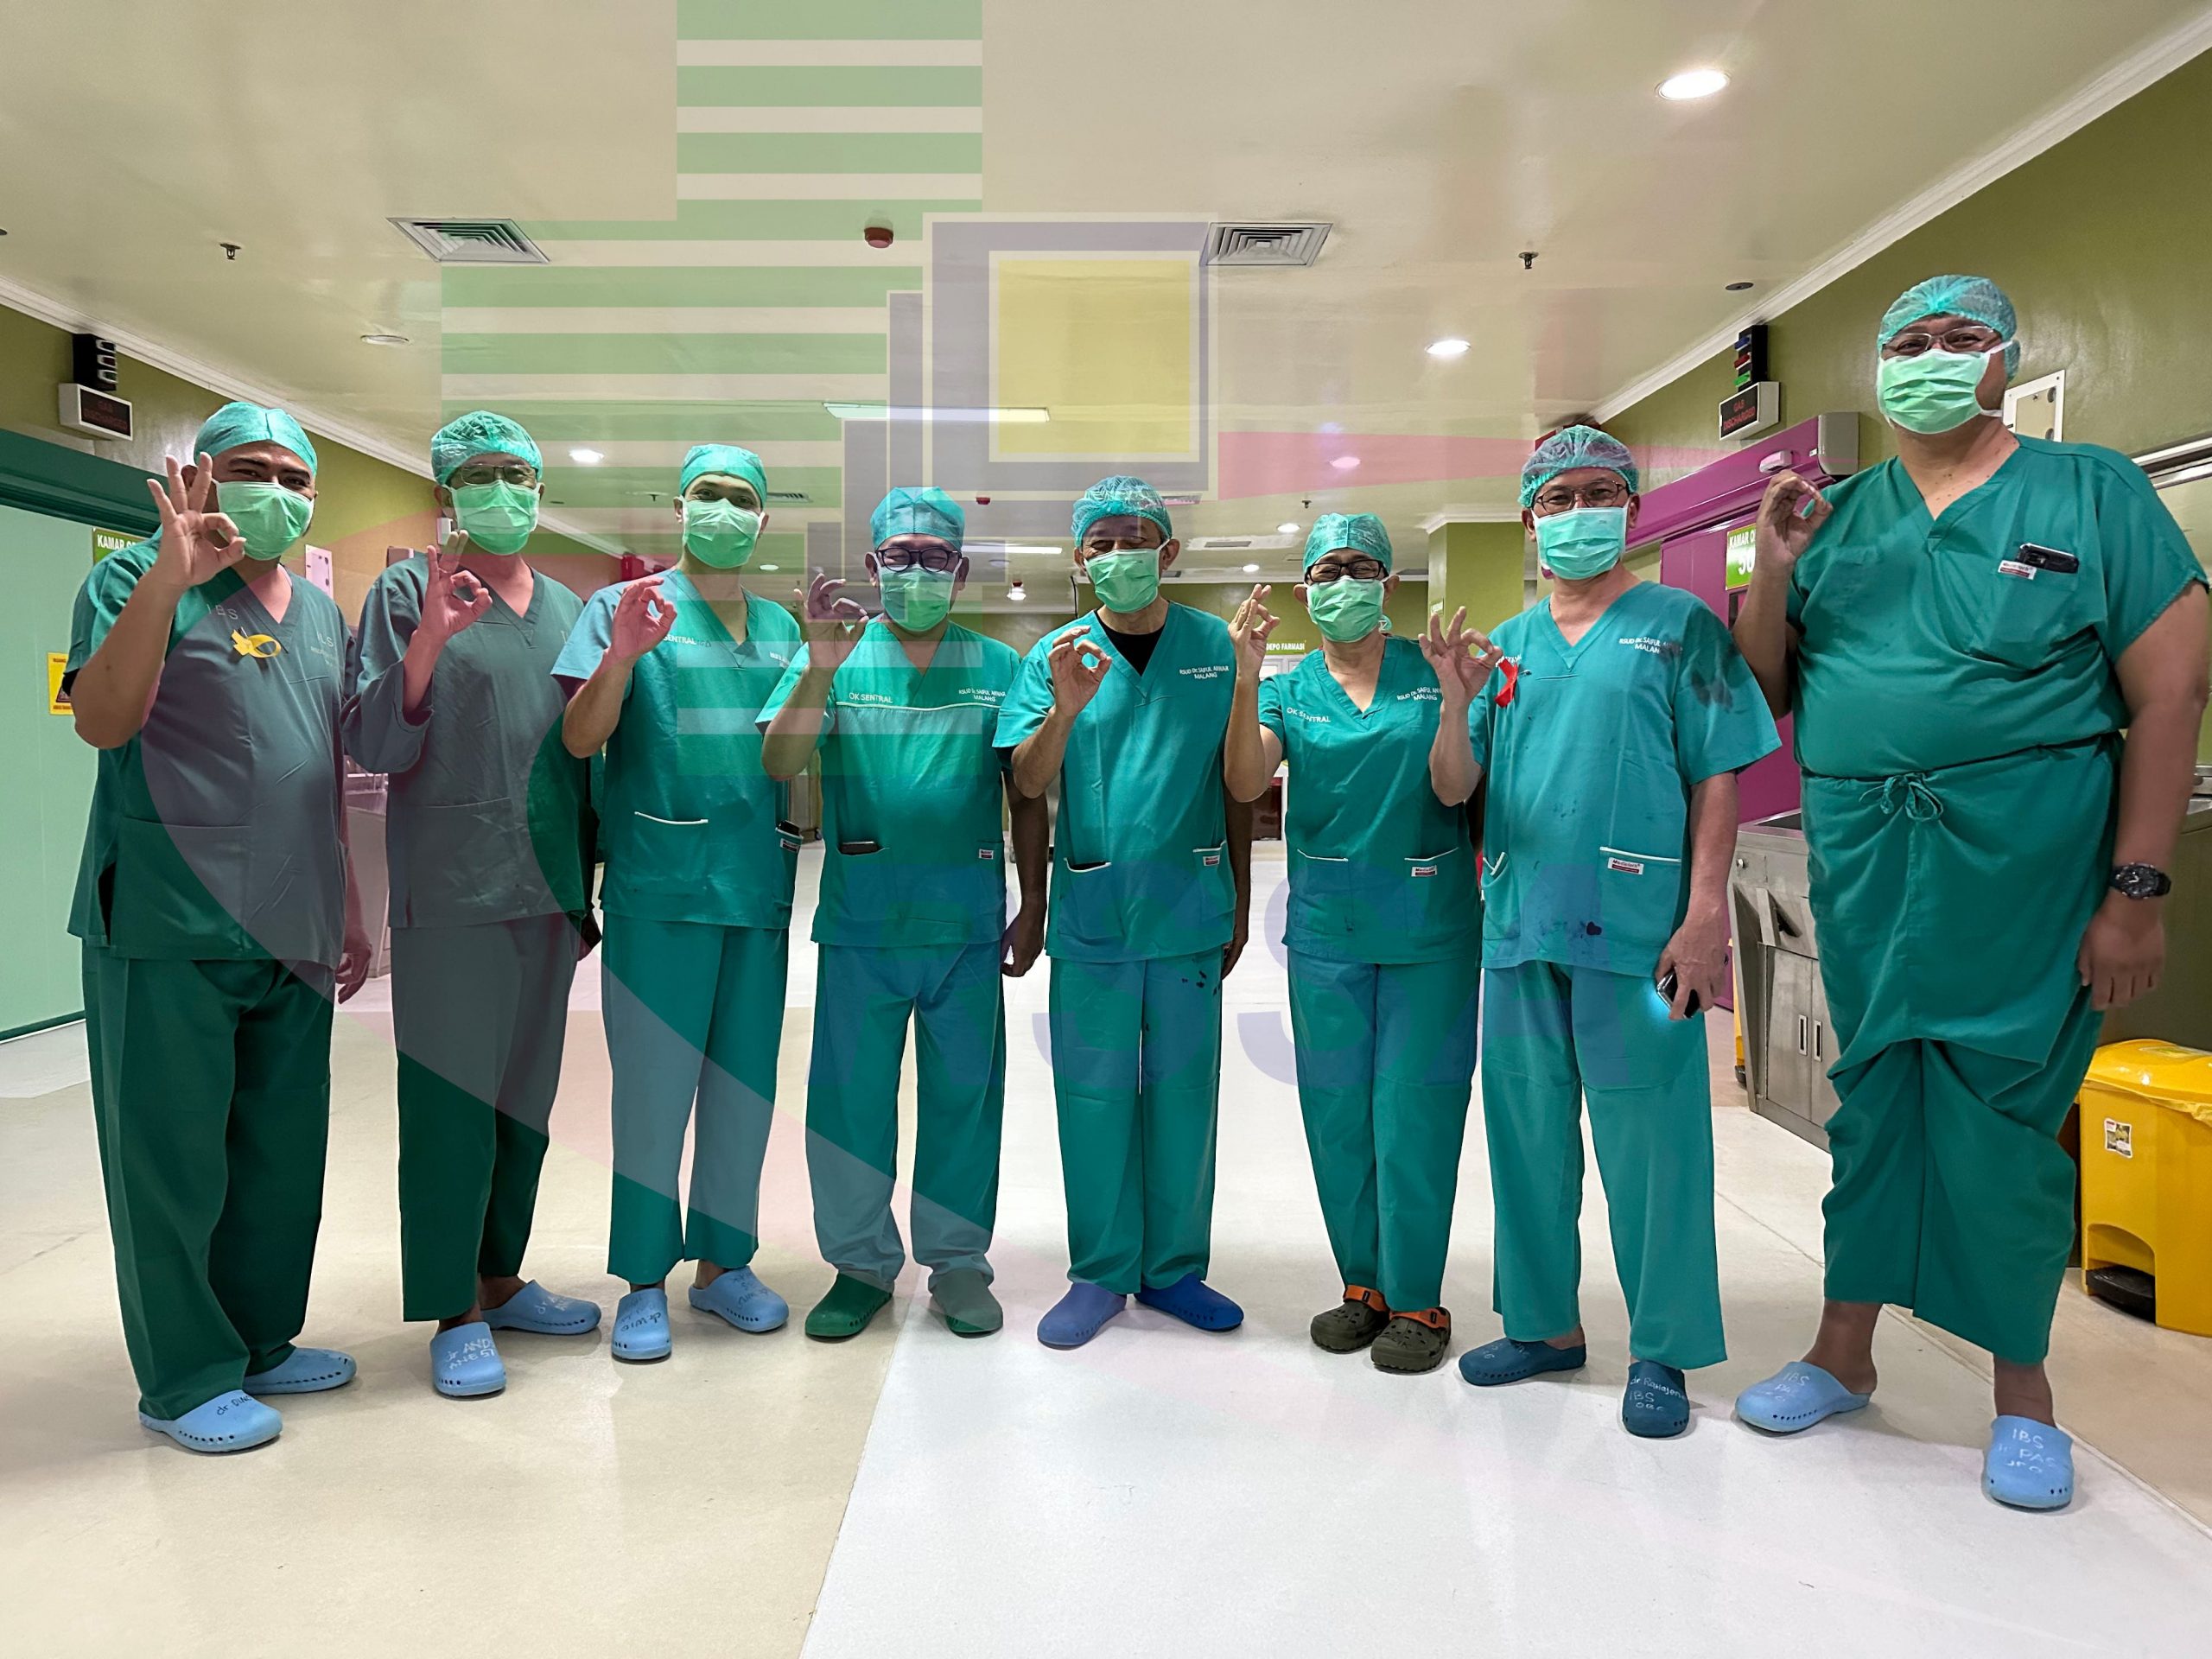 Tim Dokter RSSA Membuktikan Kapabilitas Pasca Operasi Separasi Bayi Kembar Siam